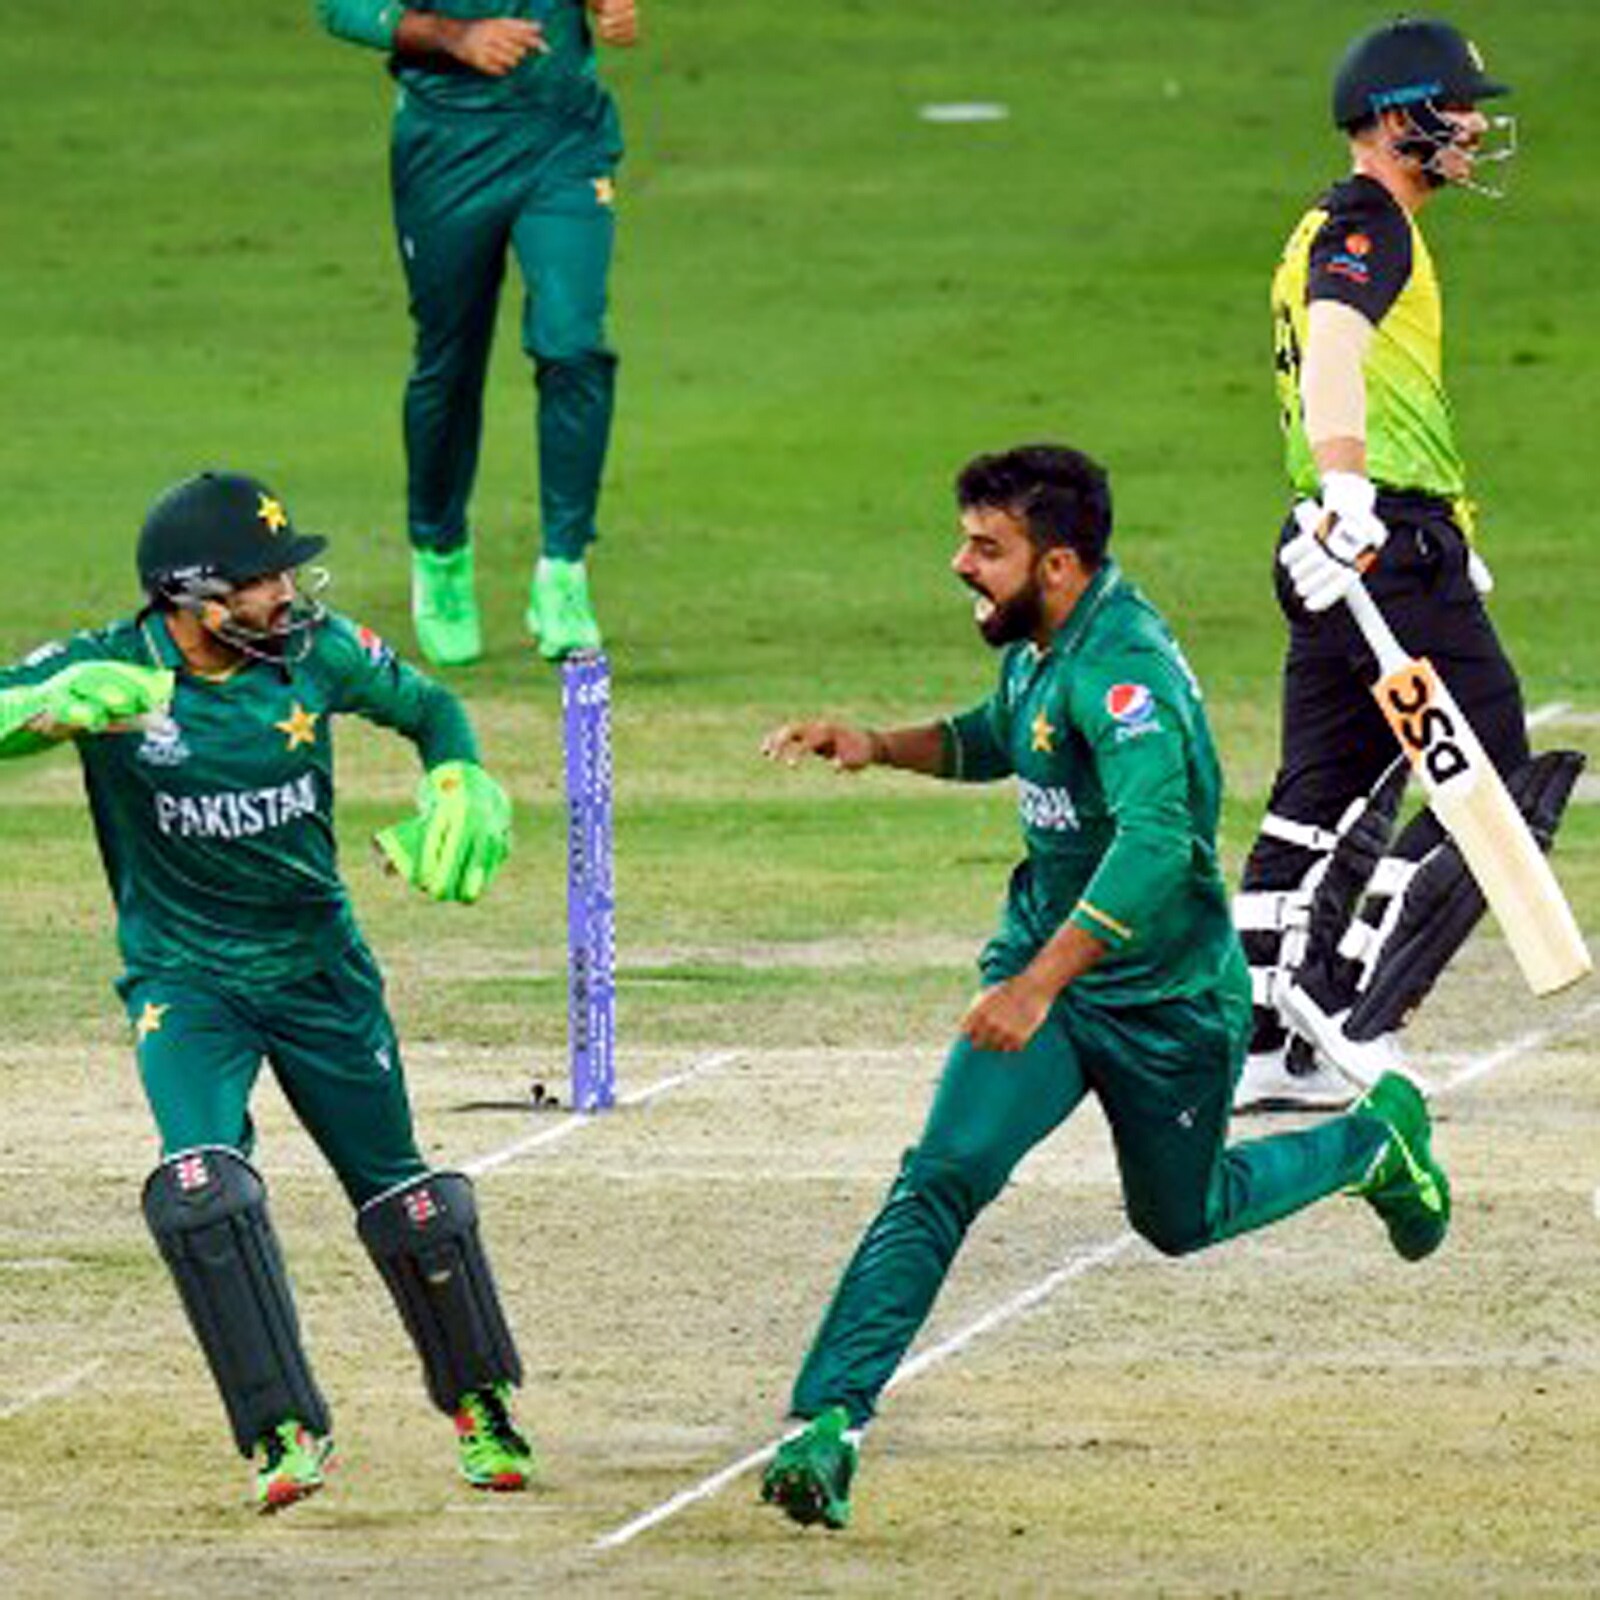  पाकिस्तान के लेग स्पिनर शादाब (Shadab Khan) ने सेमीफाइनल में ऑस्ट्रेलिया के खिलाफ 4 विकेट लिए. वे टी20 वर्ल्ड कप के सेमीफाइनल में 4 विकेट लेने वाले पहले गेंदबाज भी बने. 23 साल के इस गेंदबाज ने 15 की औसत से 9 विकेट लिए. इस दौरान उनकी इकोनॉमी सिर्फ 6 की रही.(AFP)